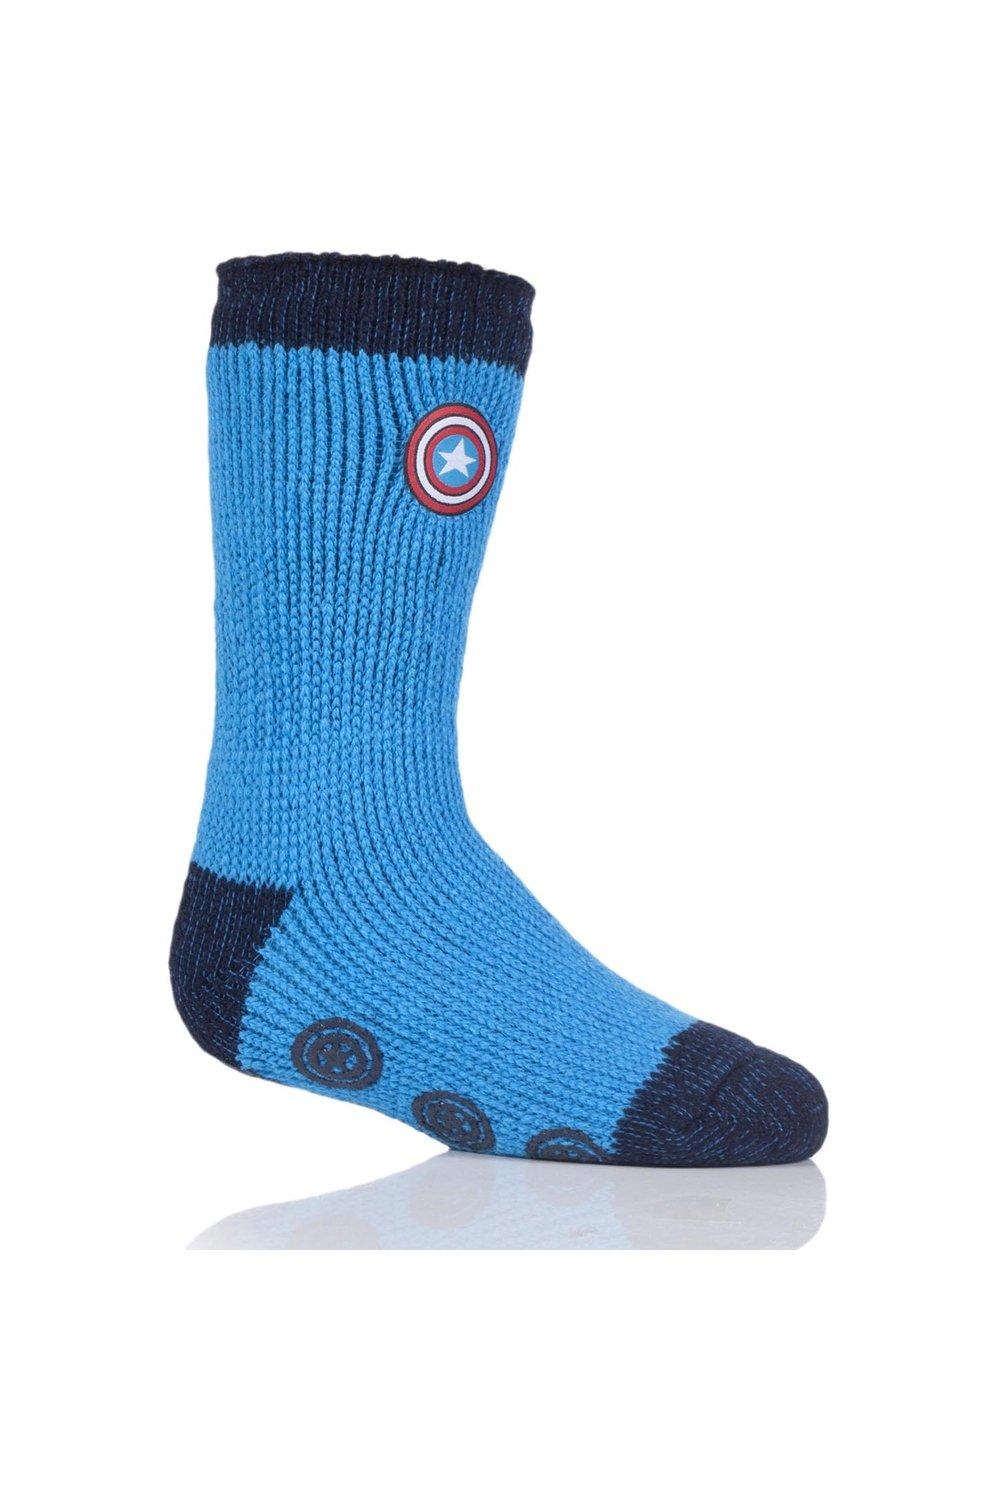 1 пара носков-тапочек с изображением Капитана Америки и щита Marvel SOCKSHOP Heat Holders, синий 1 пара полосатых носков тапочек gripper со скидкой 25% на этот стиль sockshop синий